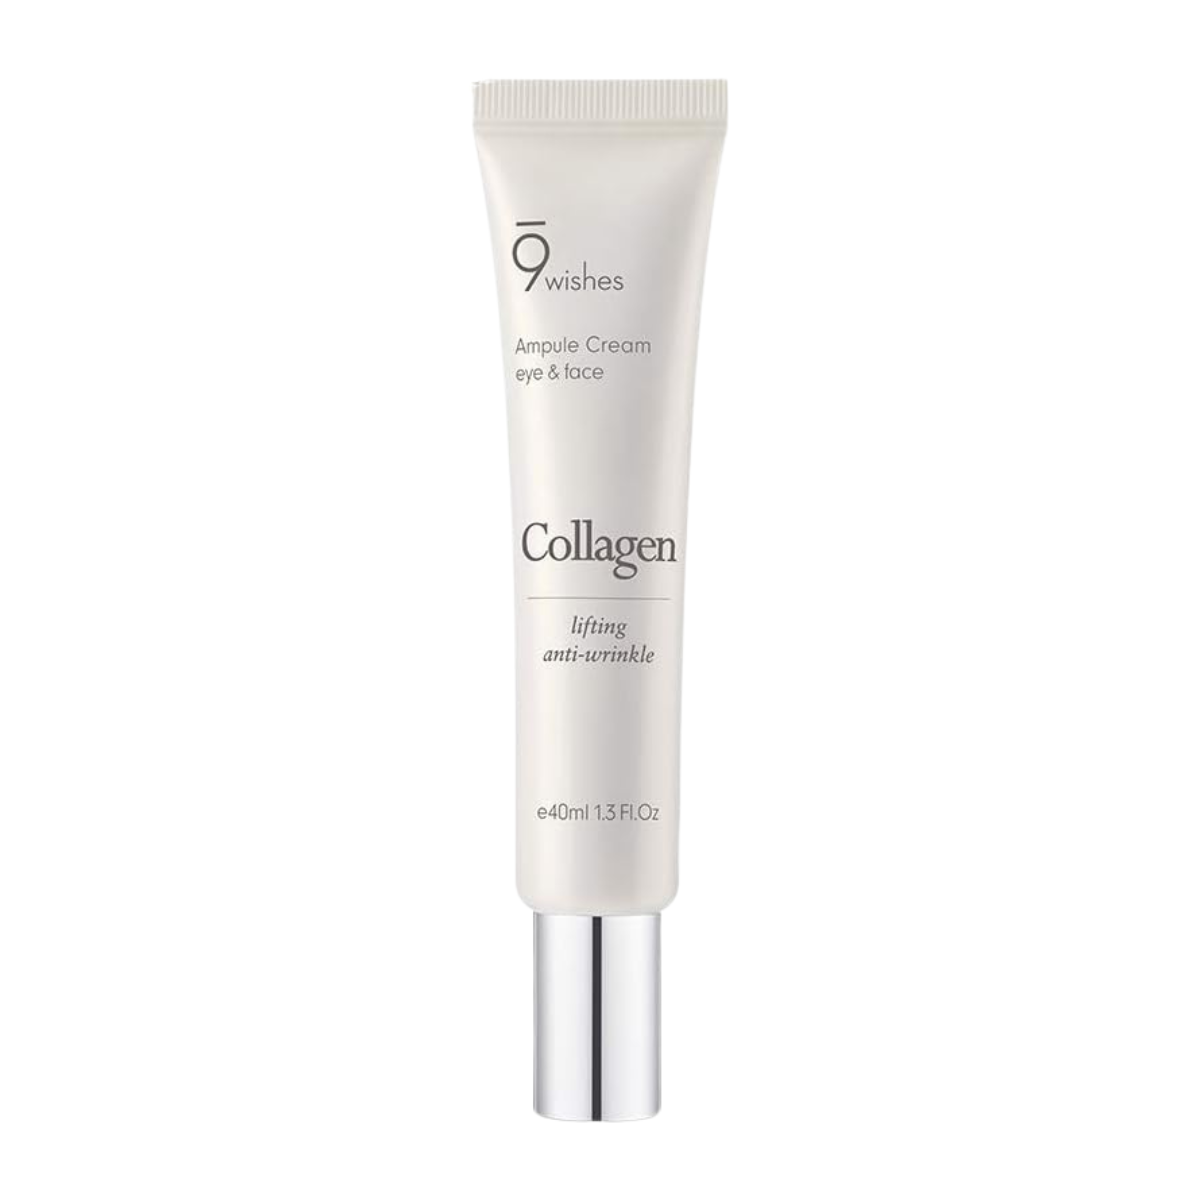 9wishes Collagen Ampule Eye & Face Cream 40ml - DODOSKIN